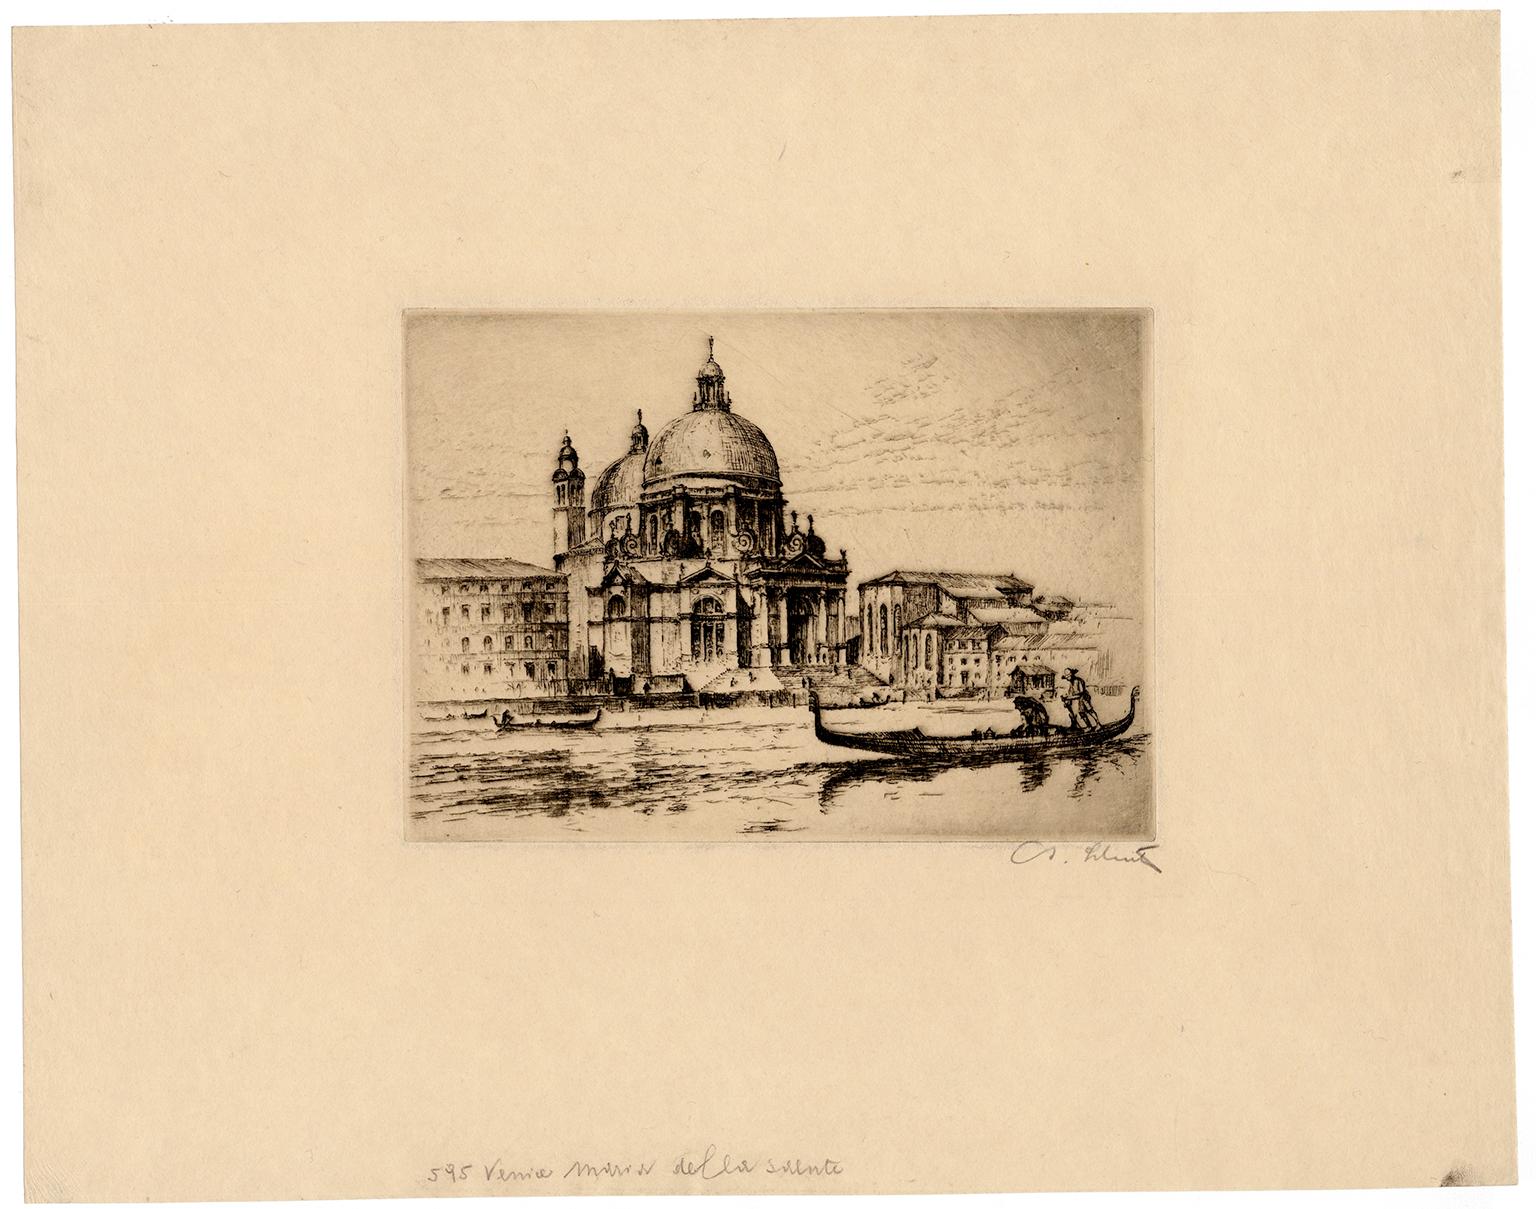 'Venice, Maria della Salute' — 1930s Impressionism - Print by Anton Schutz